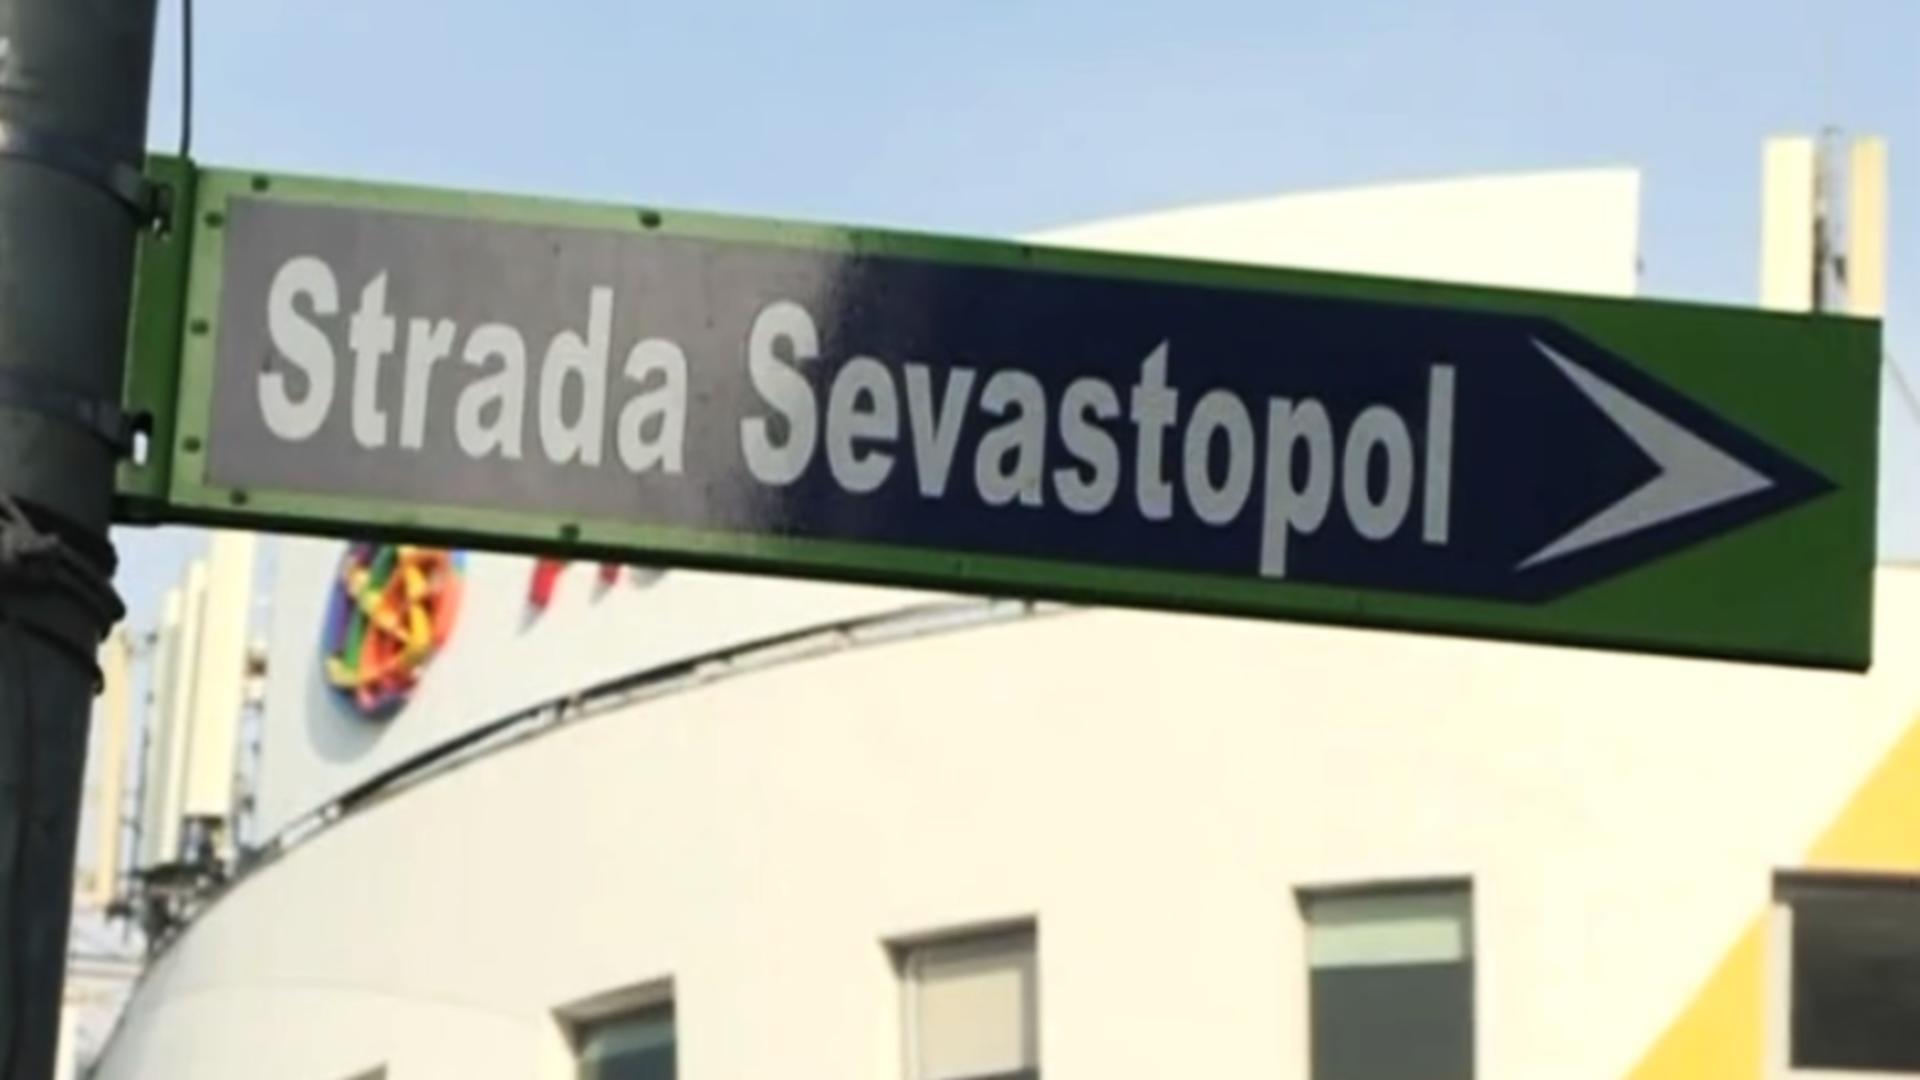 Strada Sevastopol